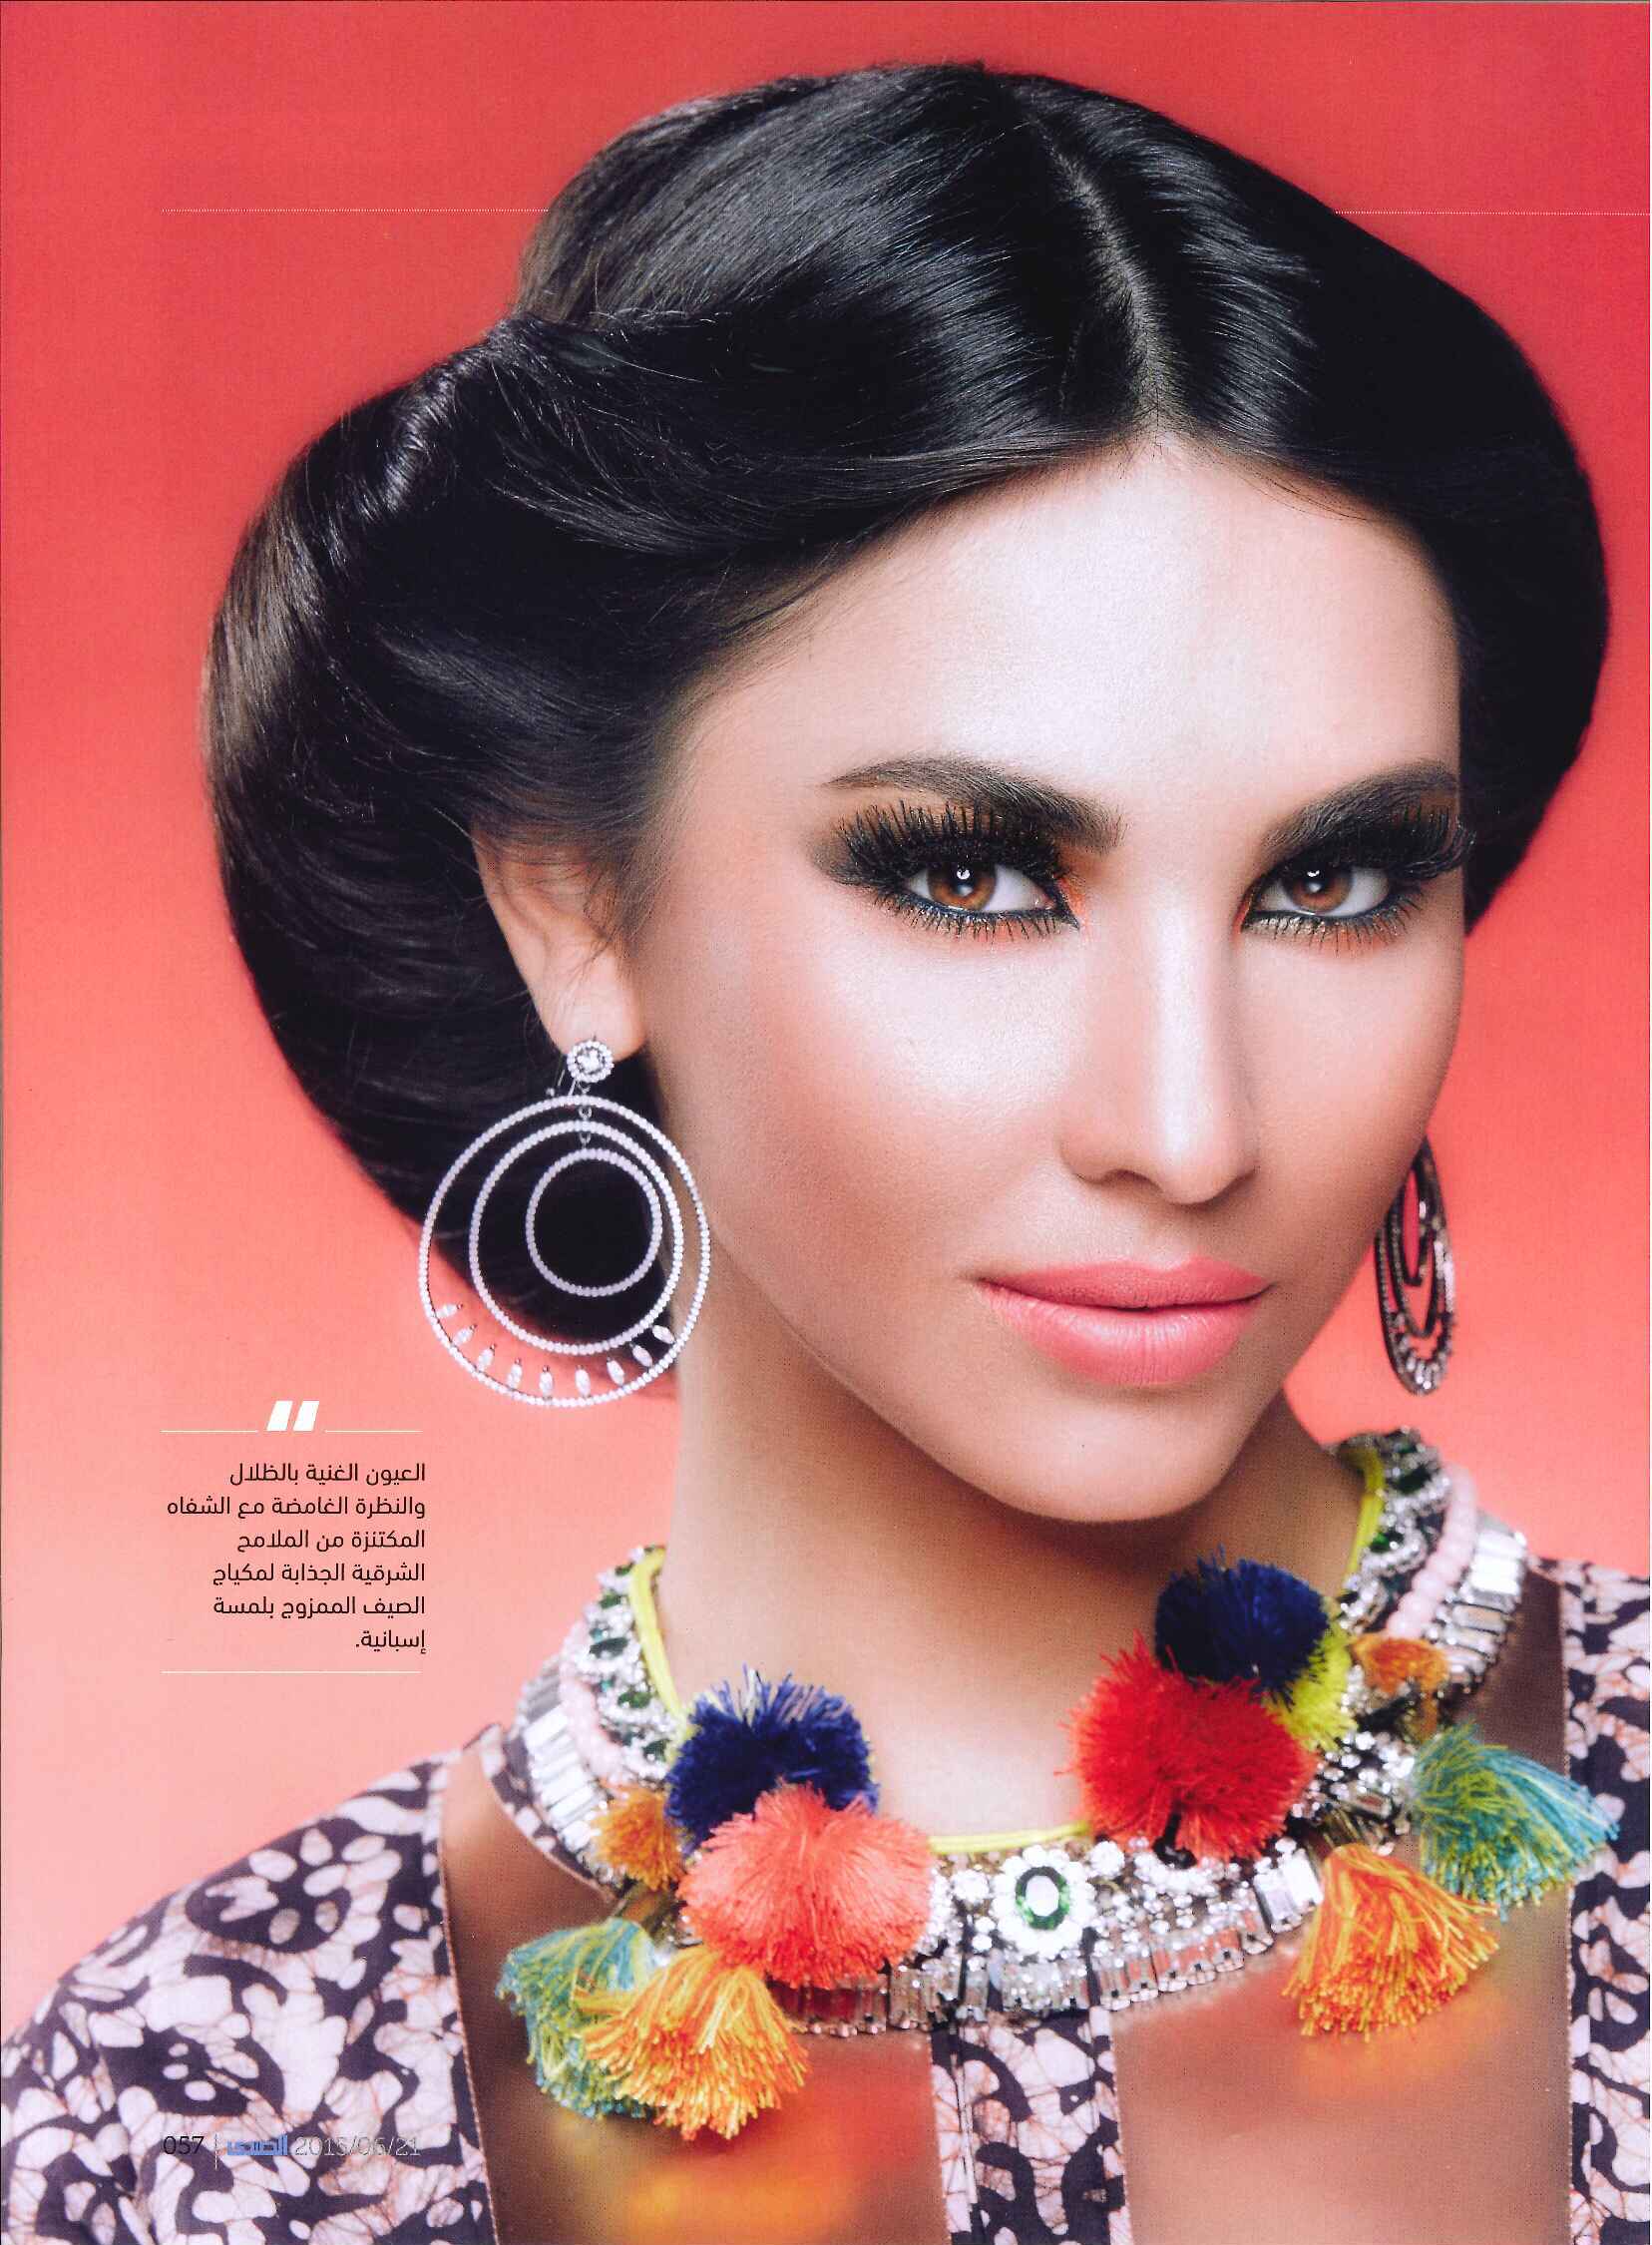 FLC Models & Talents - Catalogue Shoots - Al Sada - Erica June 15